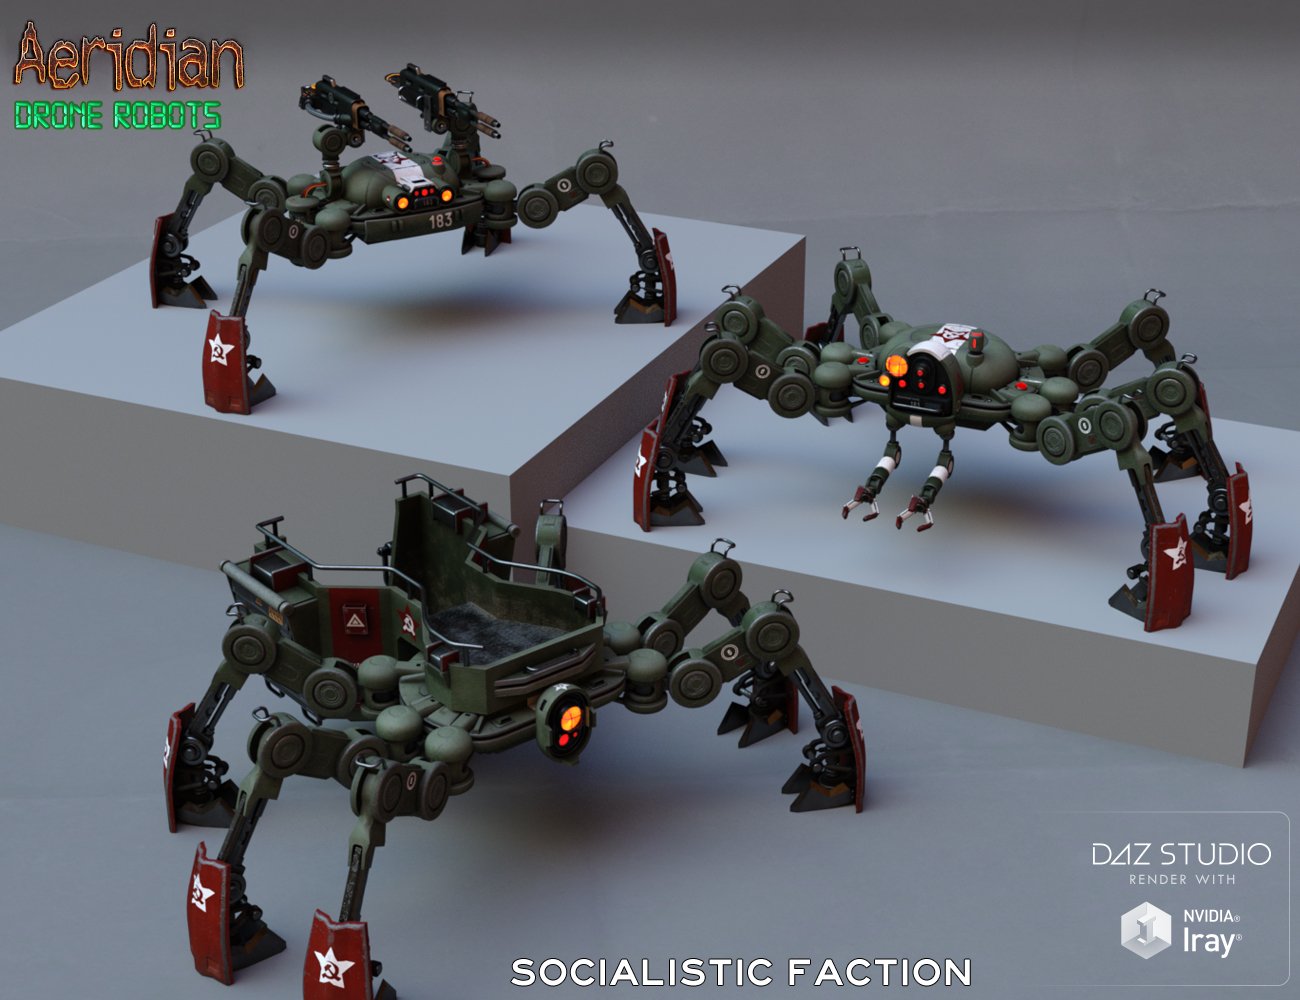 Aeridian Drone Robots by: E-Arkham, 3D Models by Daz 3D